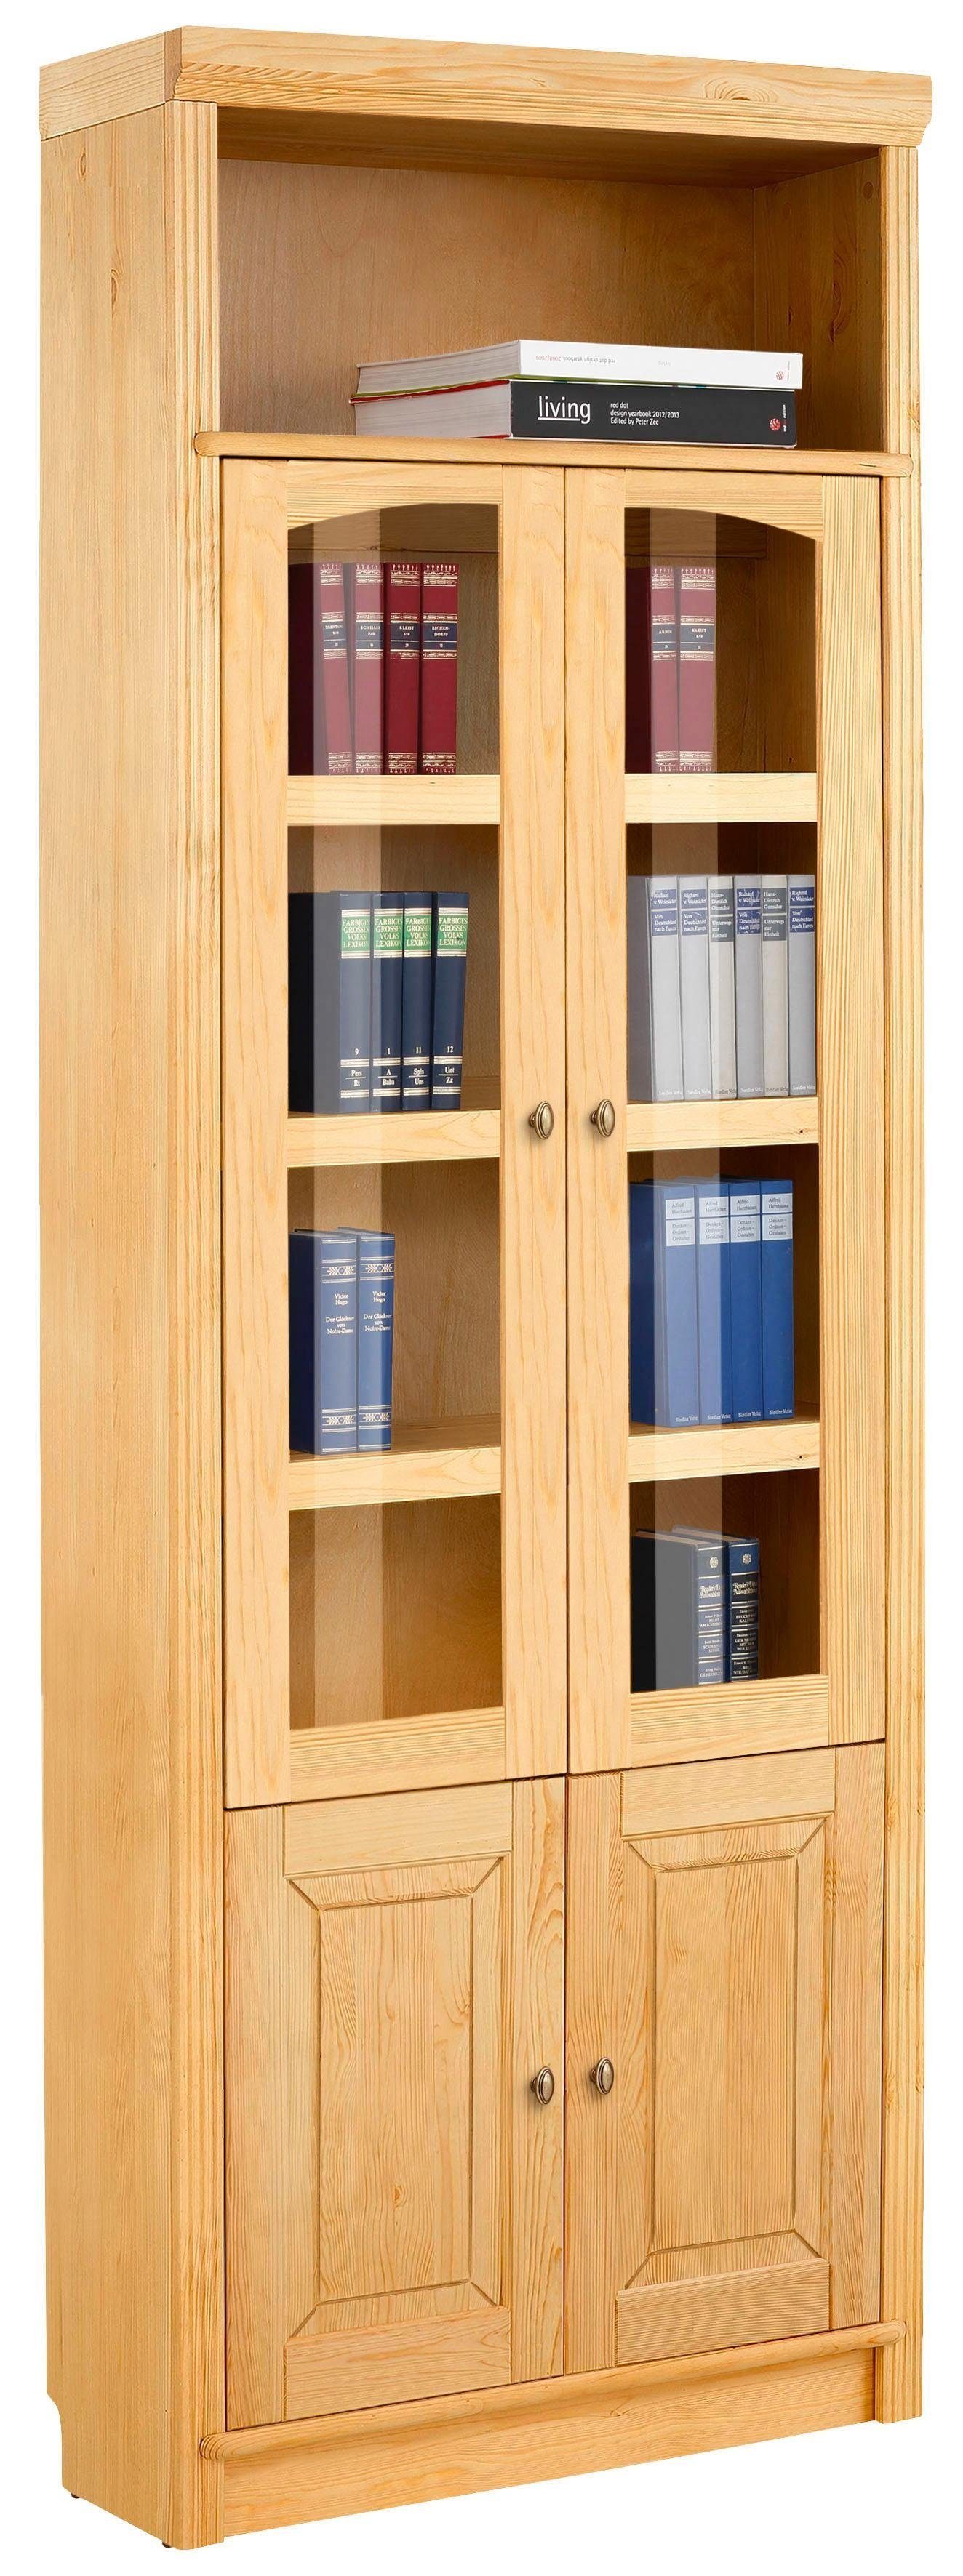 Home affaire Bücherregal Soeren, massiver mit gelaugt/geölt 29 cm, Kiefer, Türen 2 Höhen, Tiefe Einsatz in Klarglas